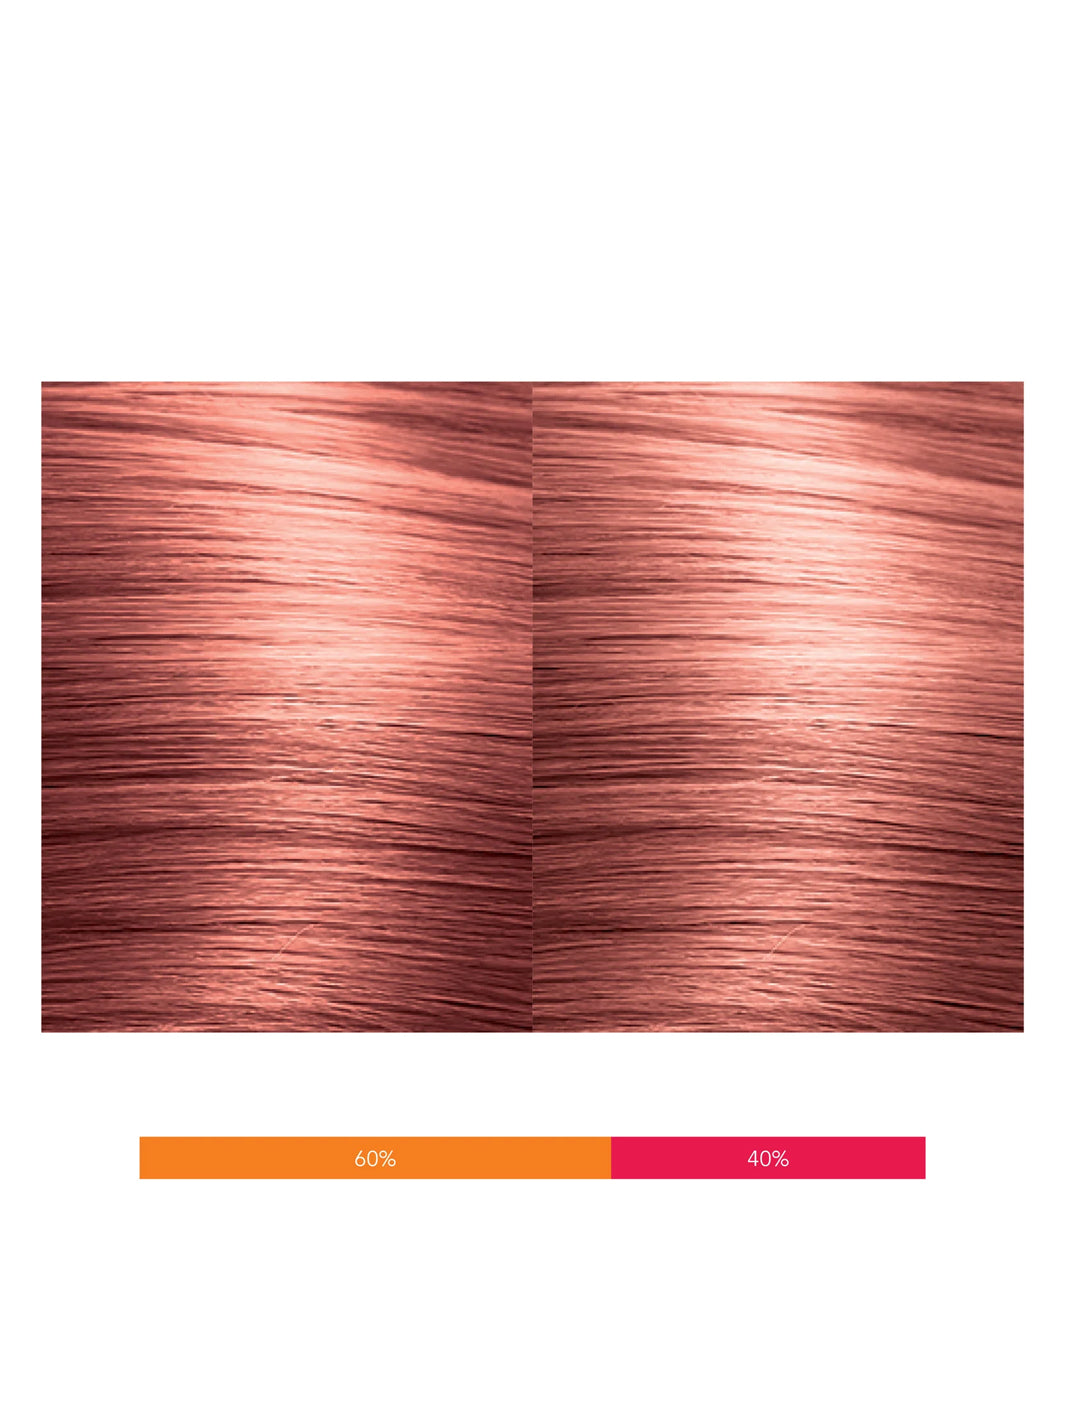 Calura Permanent Copper Red - 45/KR